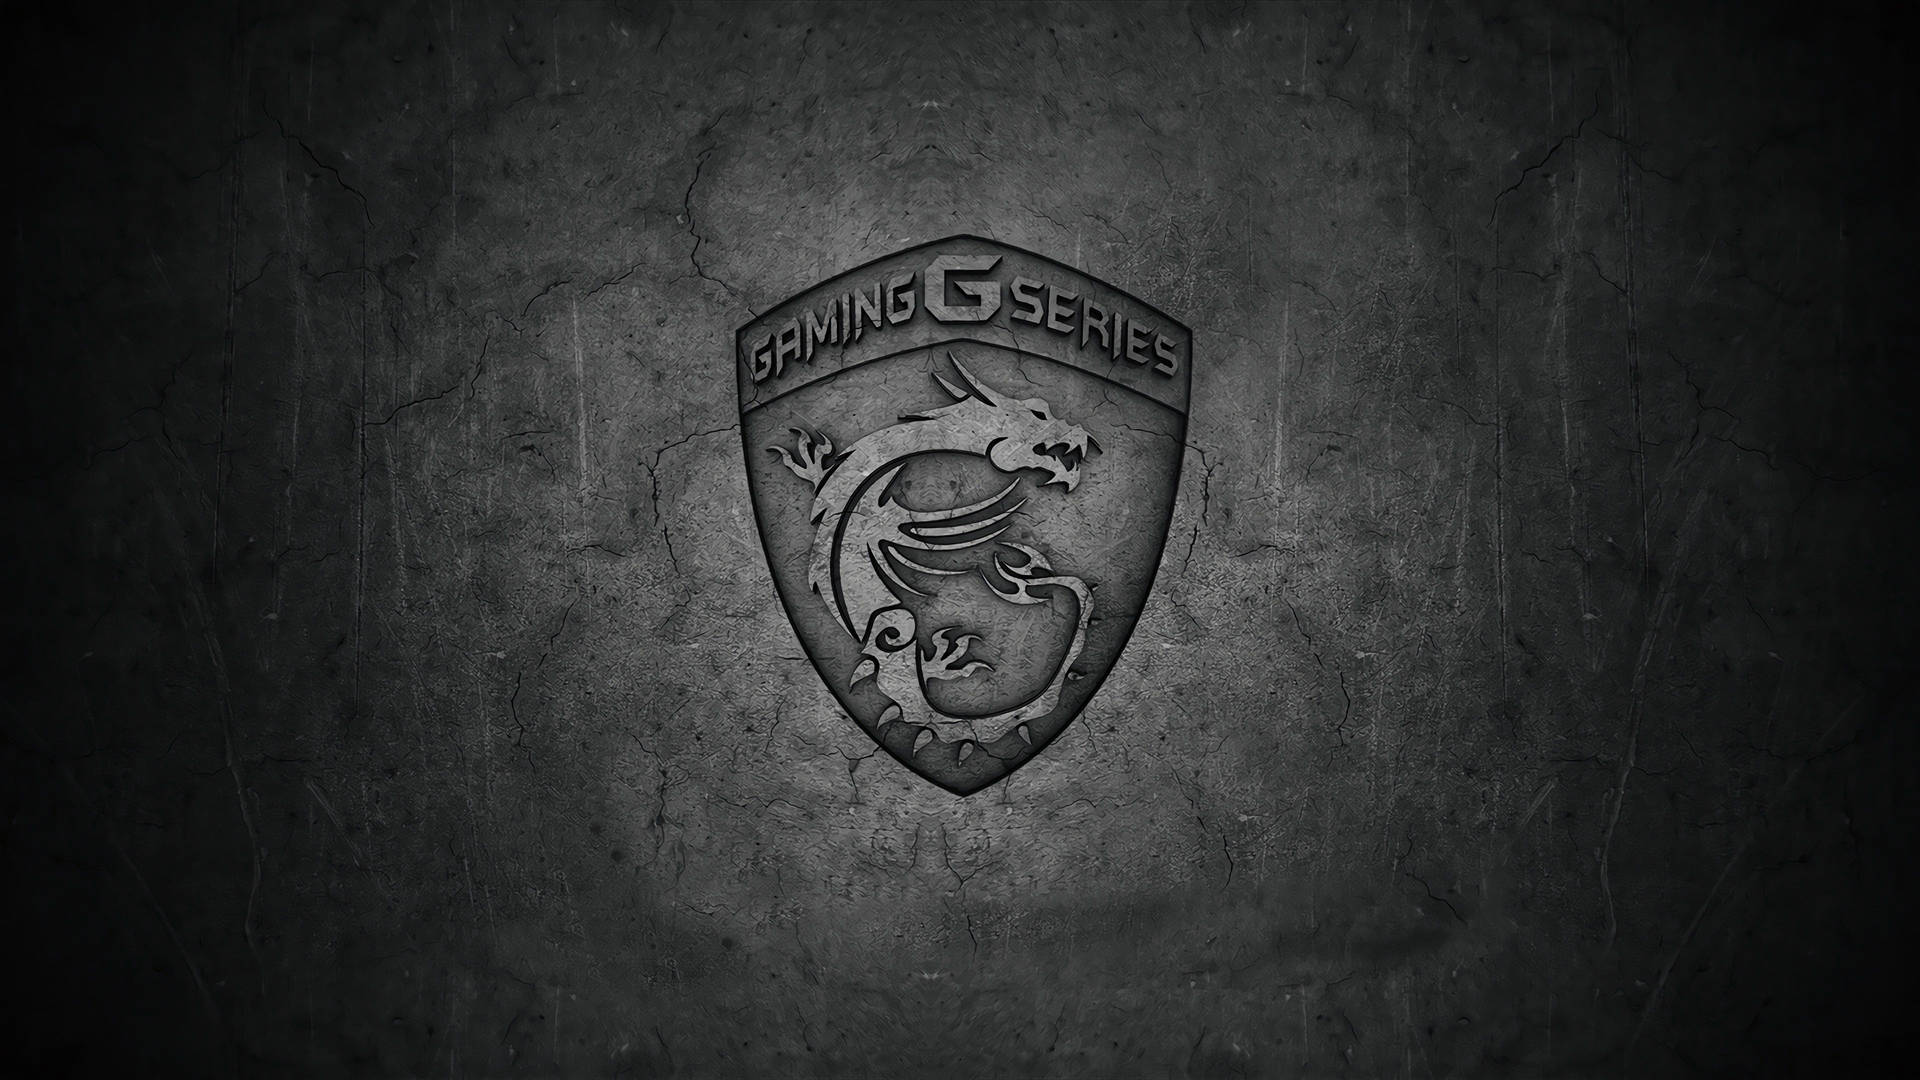 Msi Gaming Series Logo Background